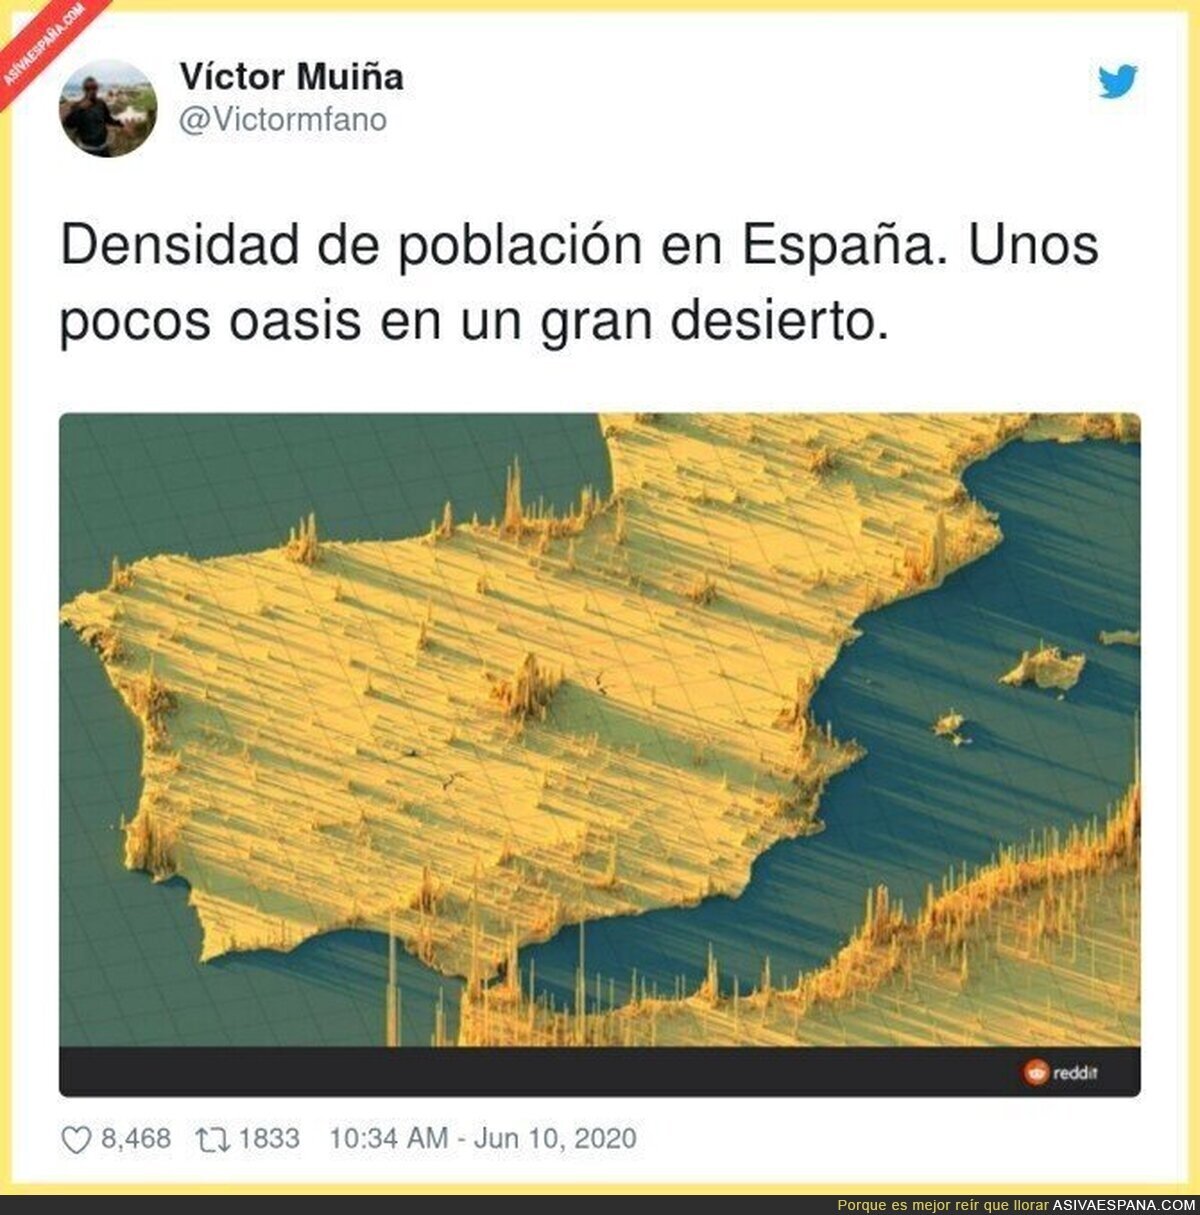 La España vaciada representada gráficamente